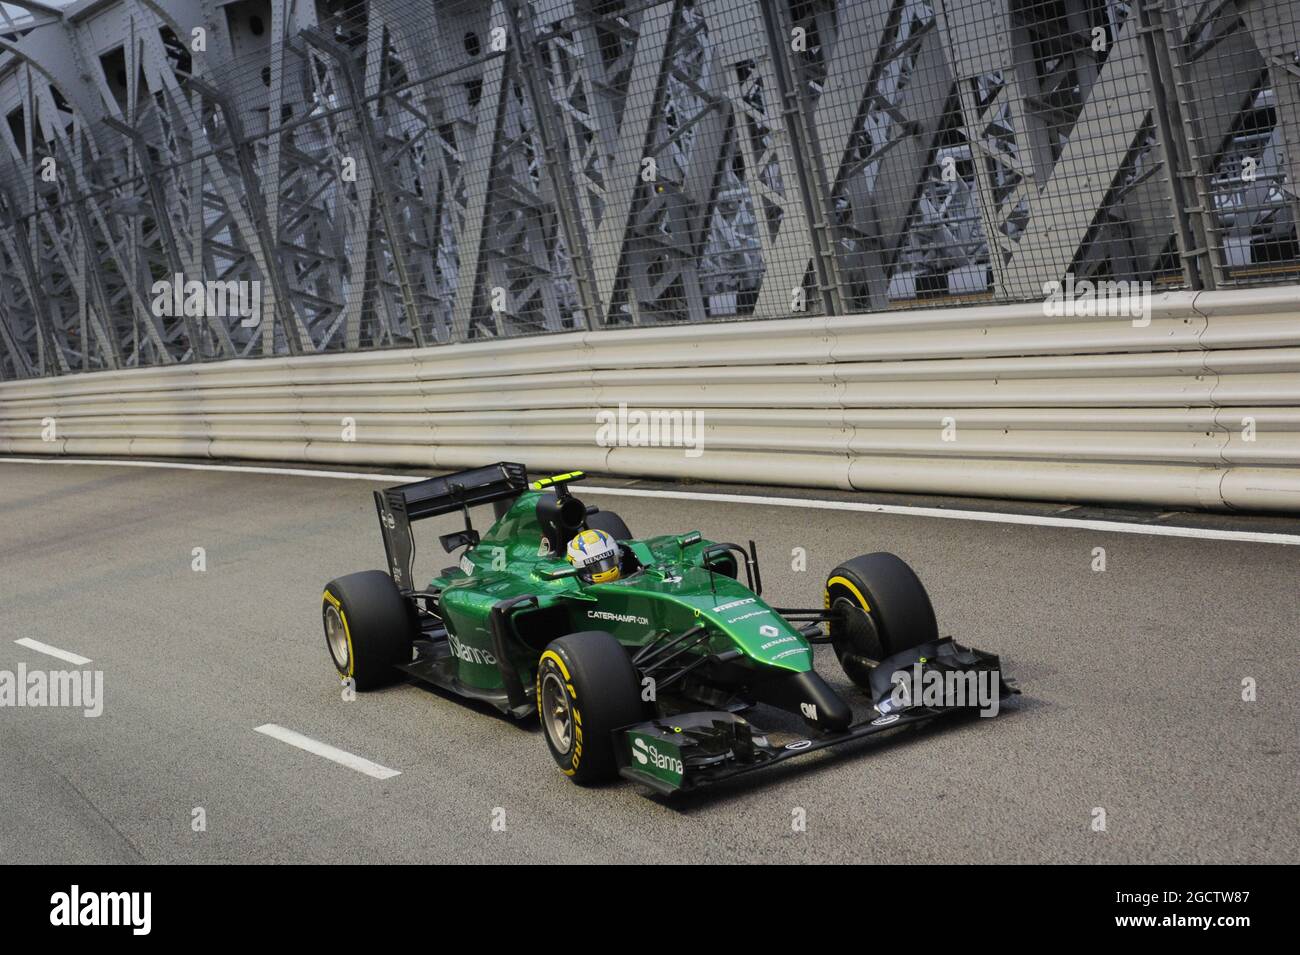 Marcus Ericsson (SWE) Caterham CT05. Gran Premio di Singapore, sabato 20 settembre 2014. Circuito Marina Bay Street, Singapore. Foto Stock